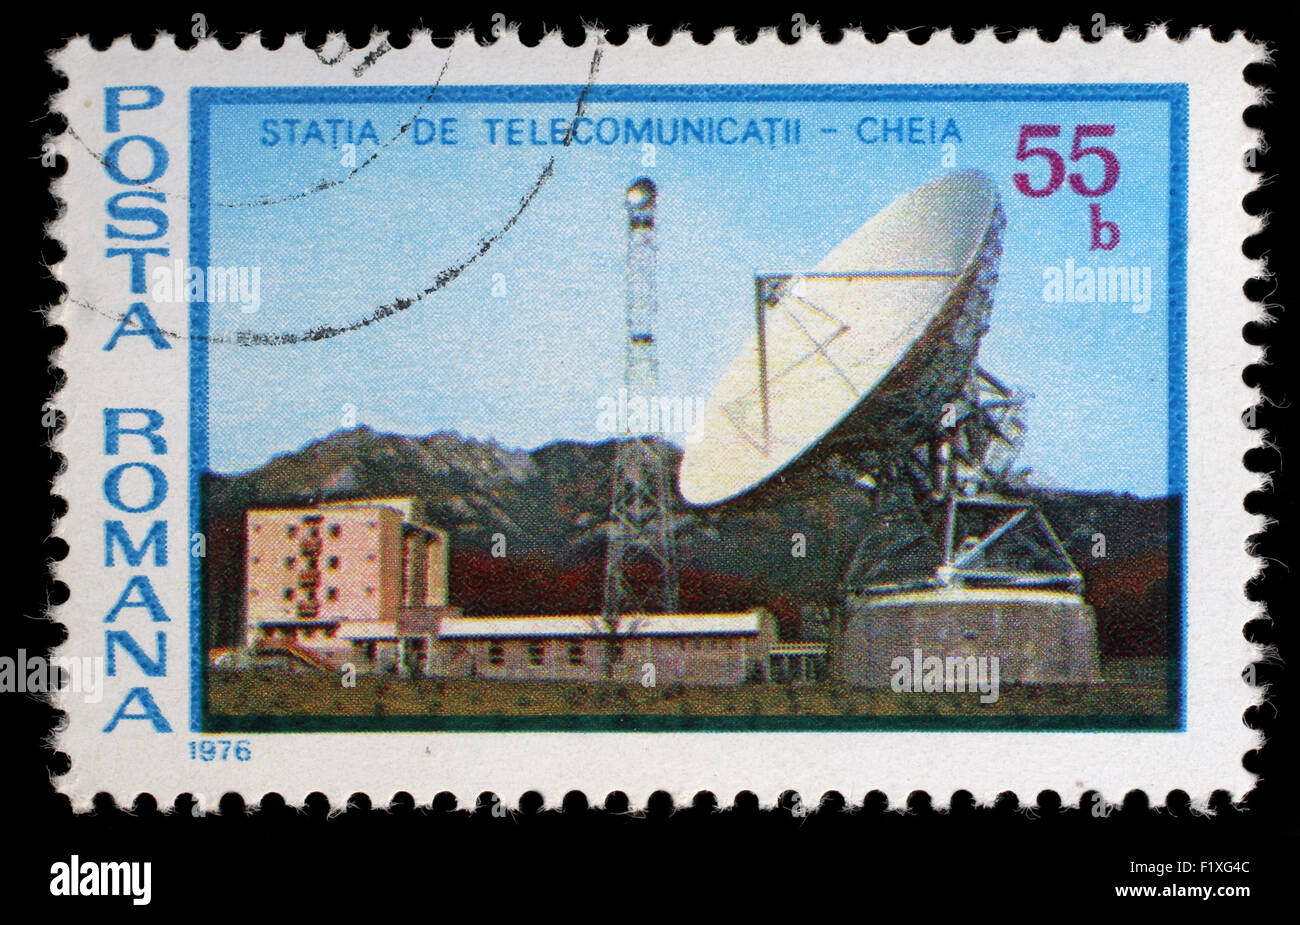 Timbro stampato in Romania mostra Cheie stazione di telecomunicazioni, circa 1976 Foto Stock